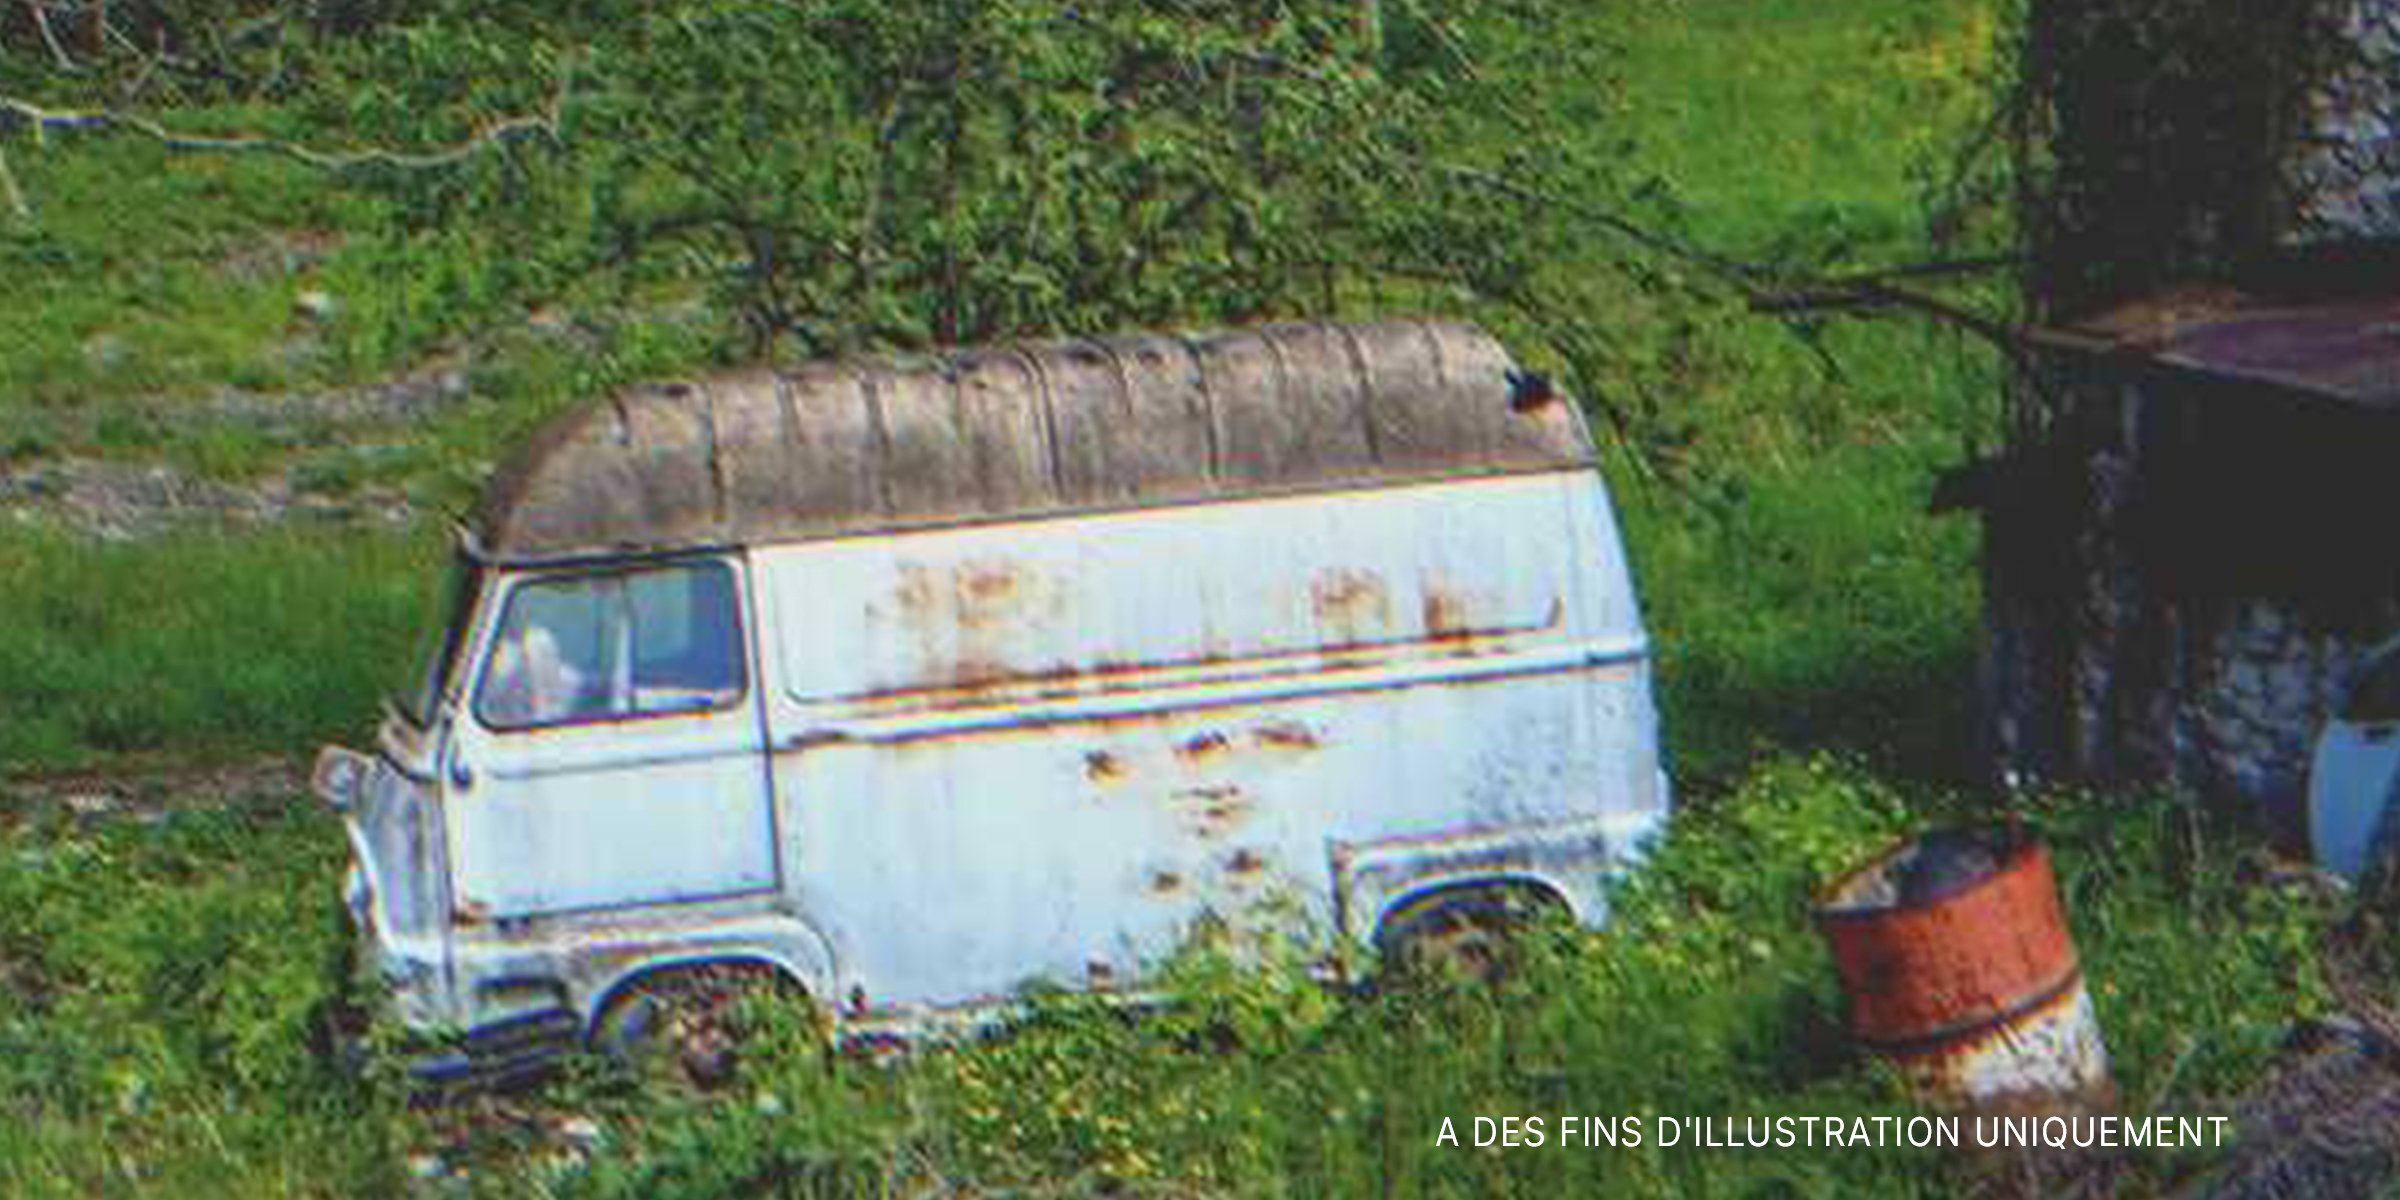 Une camionnette abandonnée sur l'herbe | Source : Shutterstock